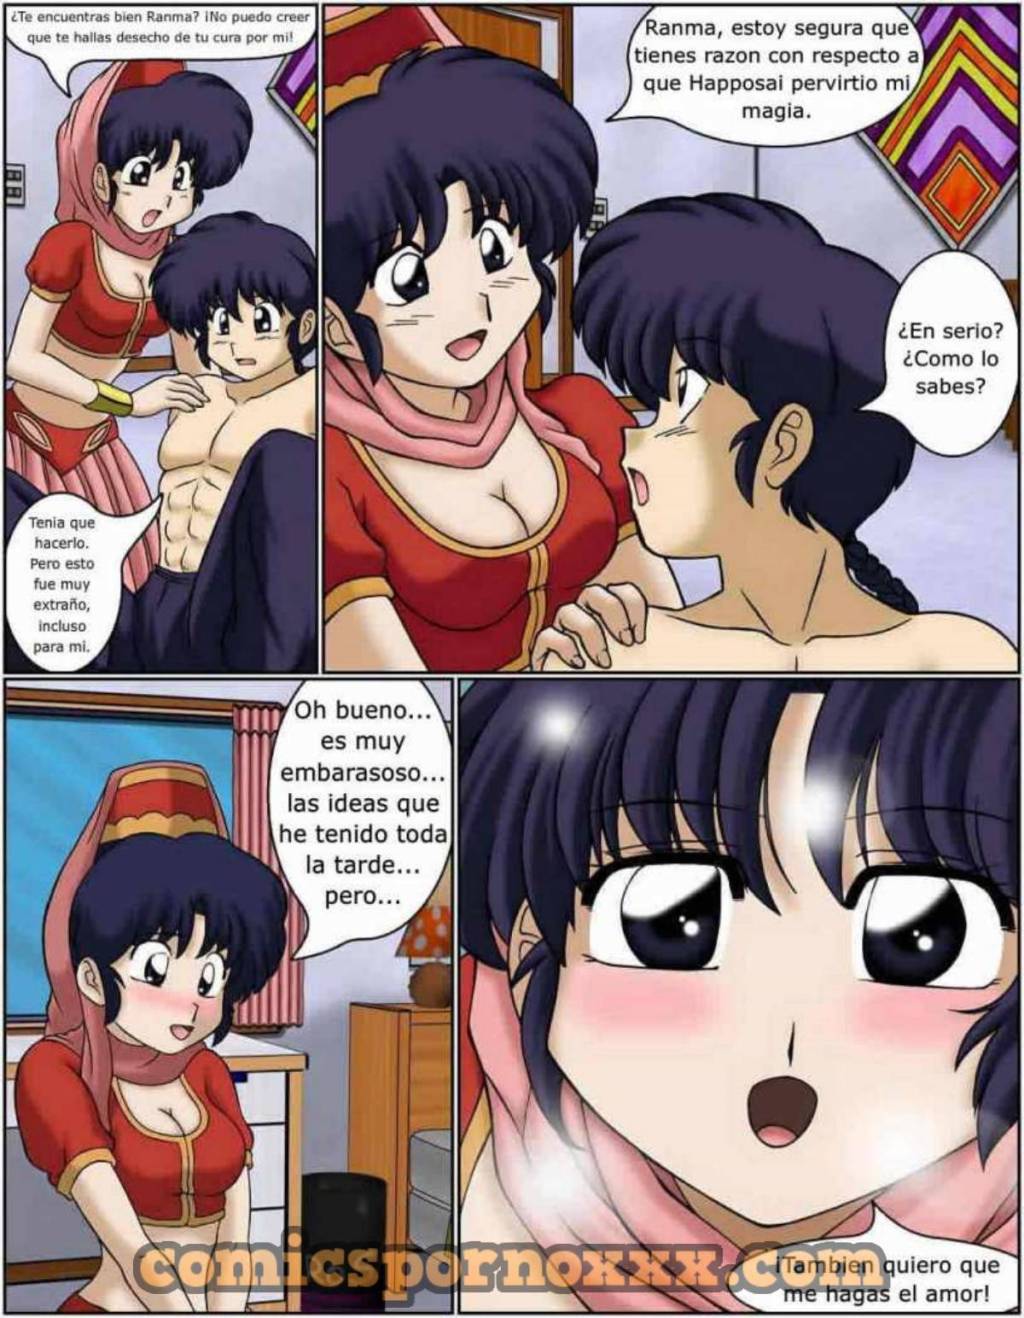 I Dream of Akane - 43 - Comics Porno - Hentai Manga - Cartoon XXX